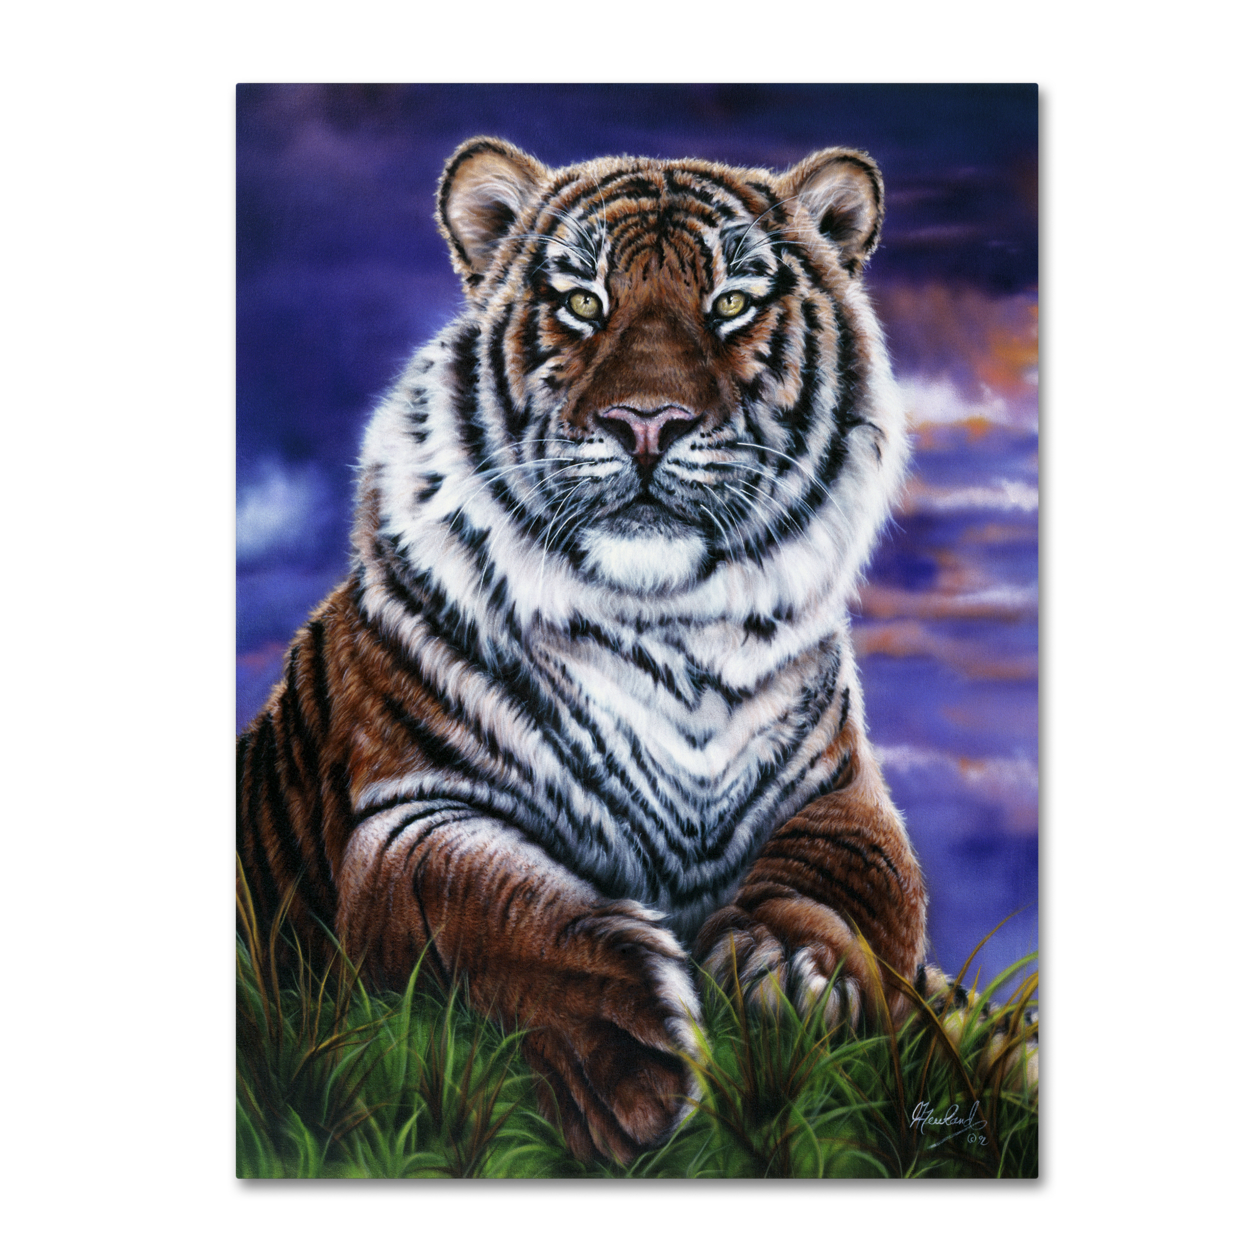 Jenny Newland 'Arizona Tiger' Canvas Wall Art 35 X 47 Inches